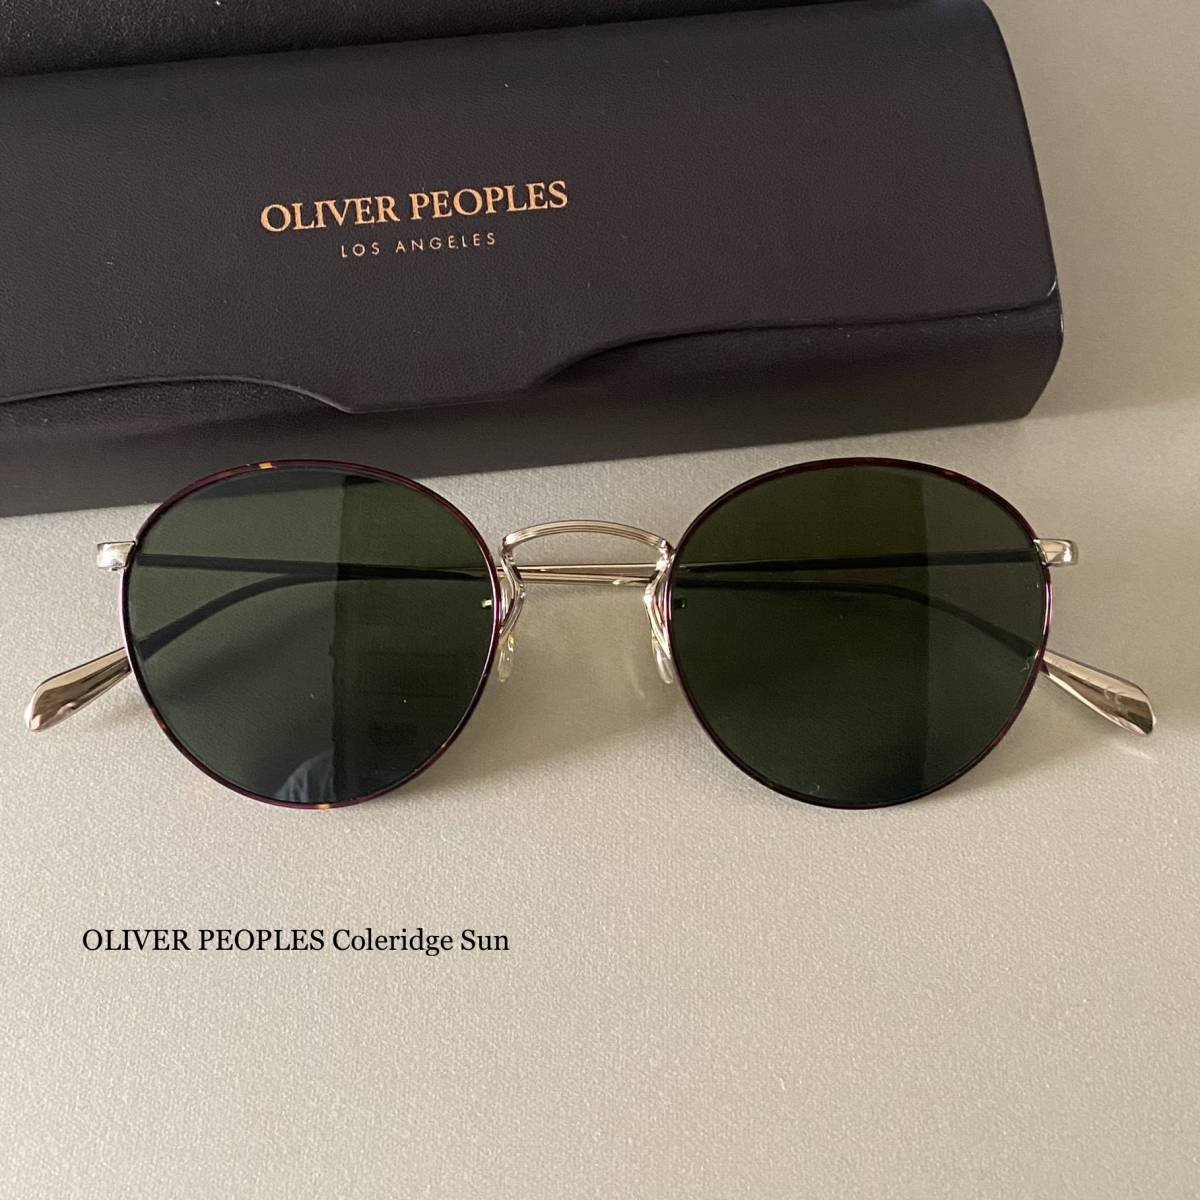 OV274 新品 OLIVER PEOPLES Coleridge Sun サングラス コレリッジ コールリッジ オリバーピープルズ メガネ